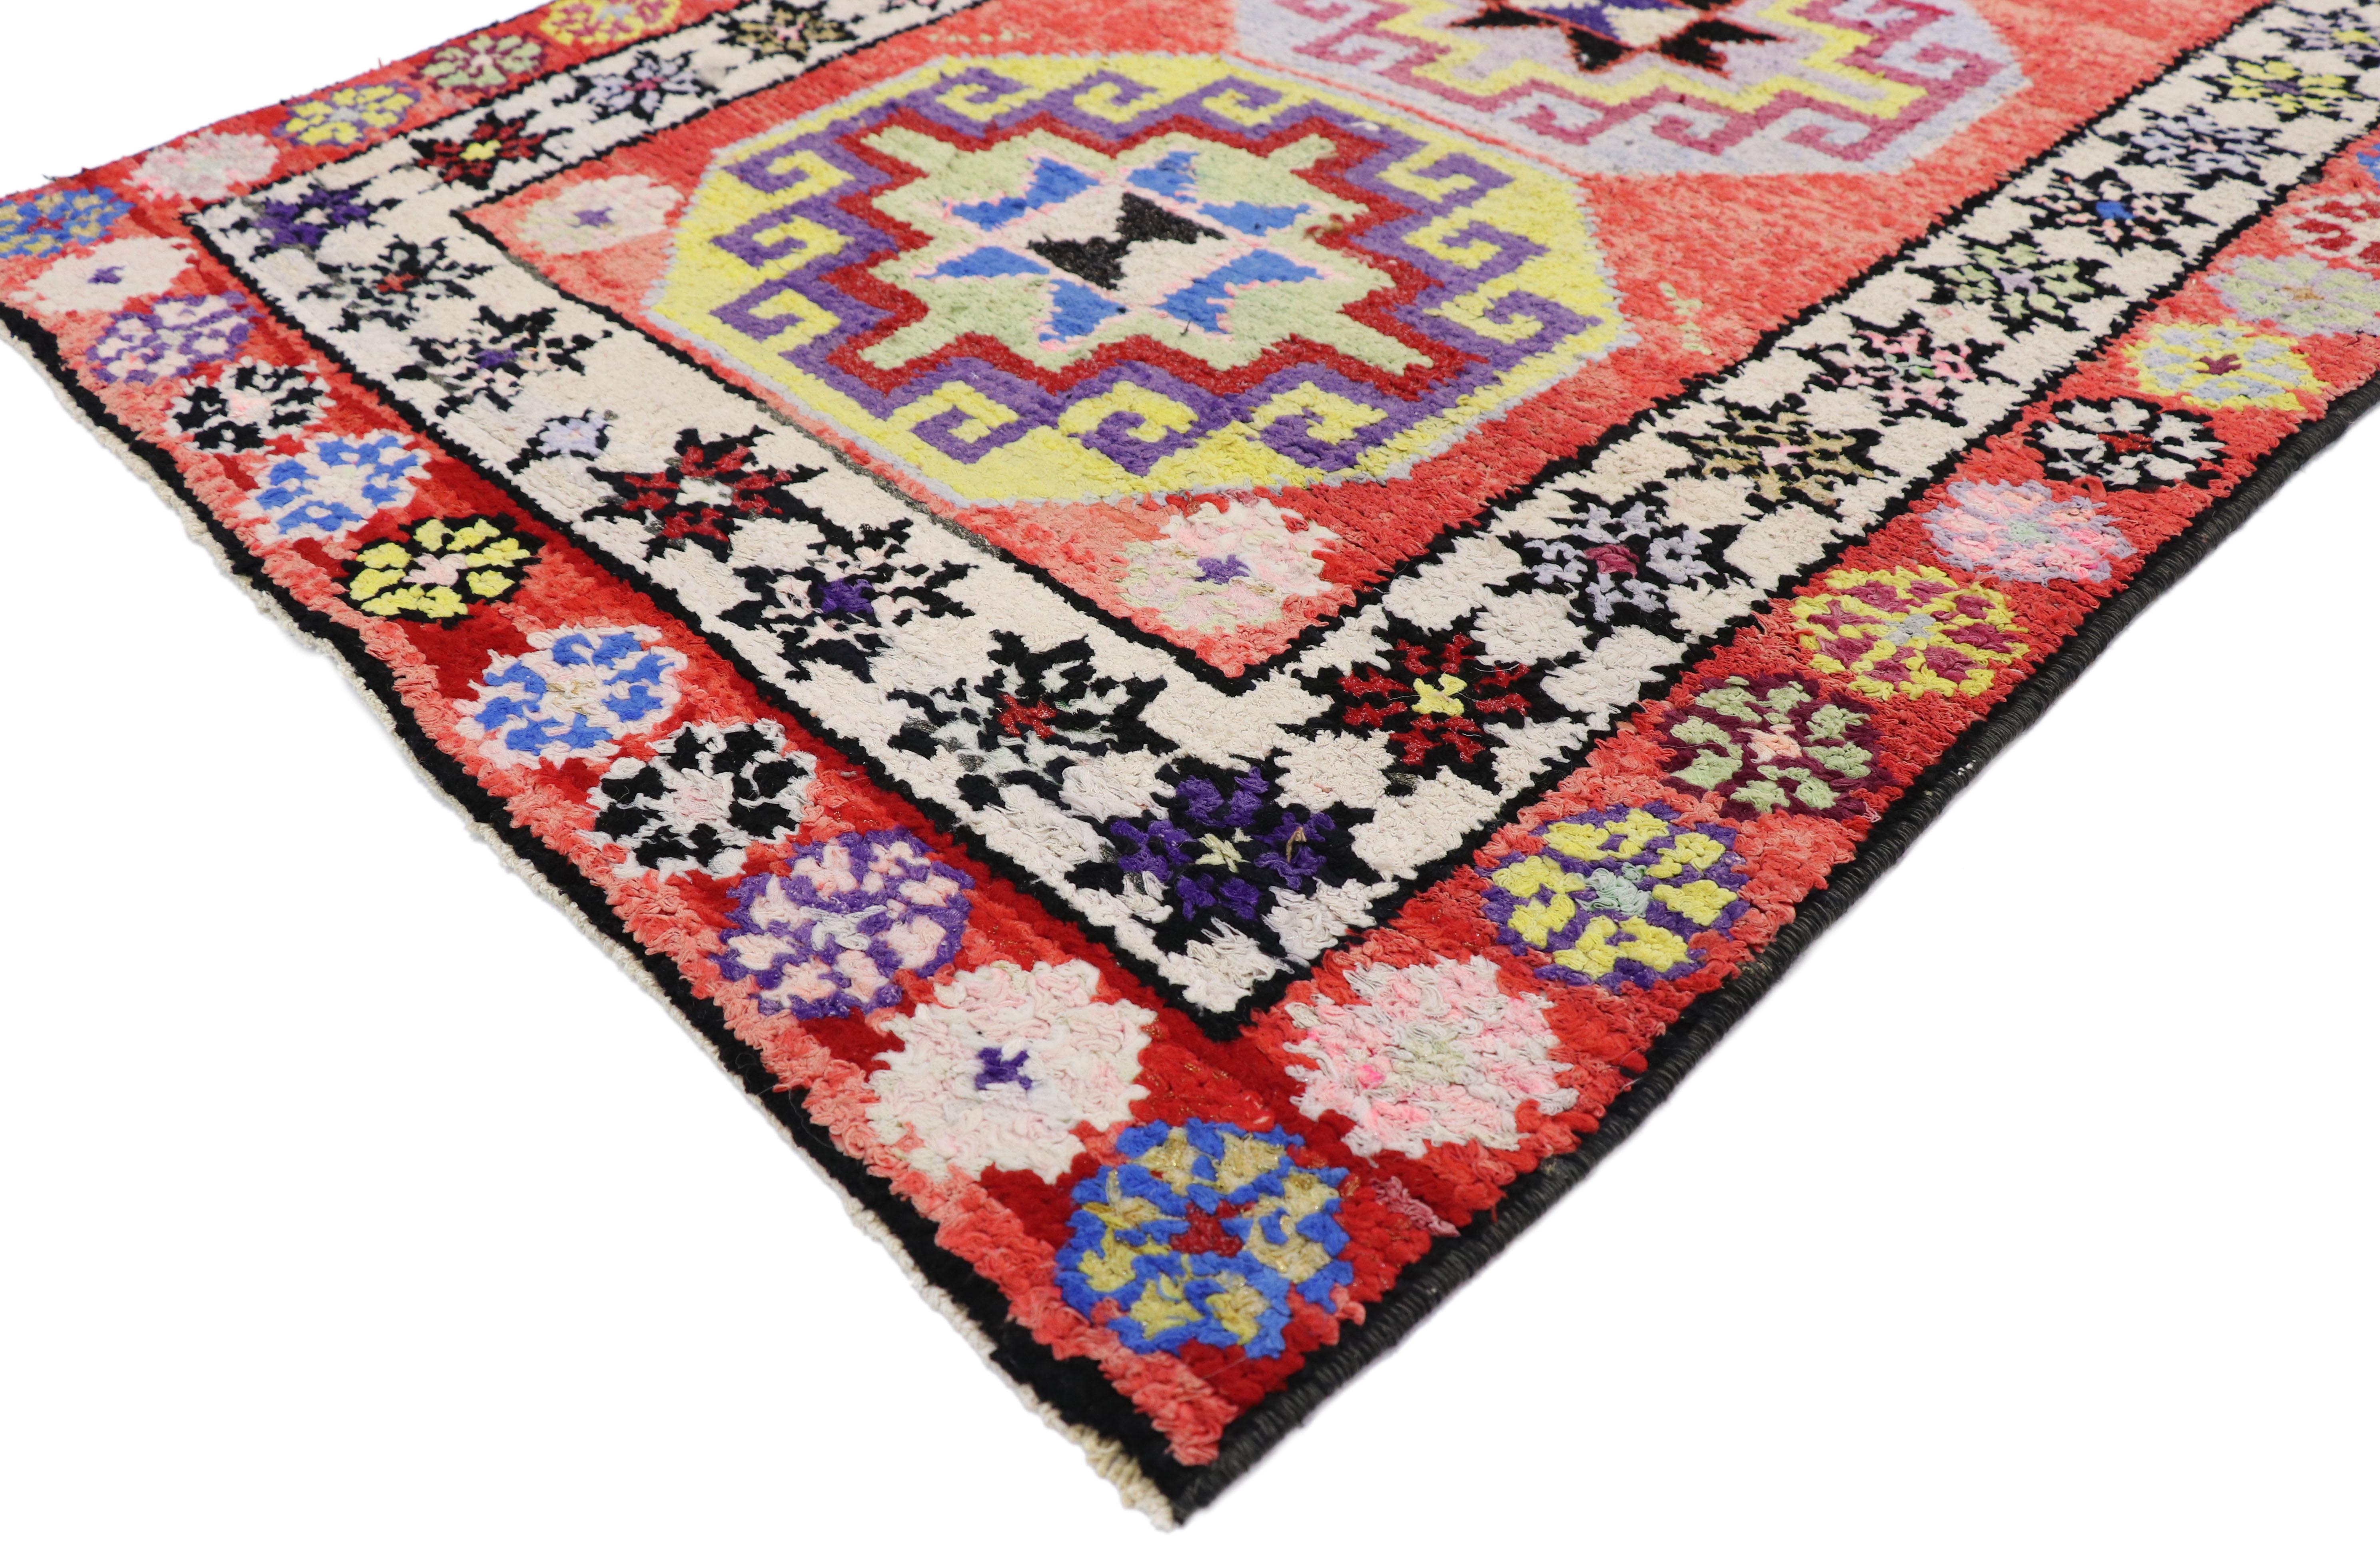 52639, chemin de table vintage turc Oushak avec un style contemporain tribal et mexicain moderne. Avec ses couleurs vibrantes et son motif exotique, ce chemin de table en laine turque vintage Oushak, noué à la main, allie magnifiquement le style